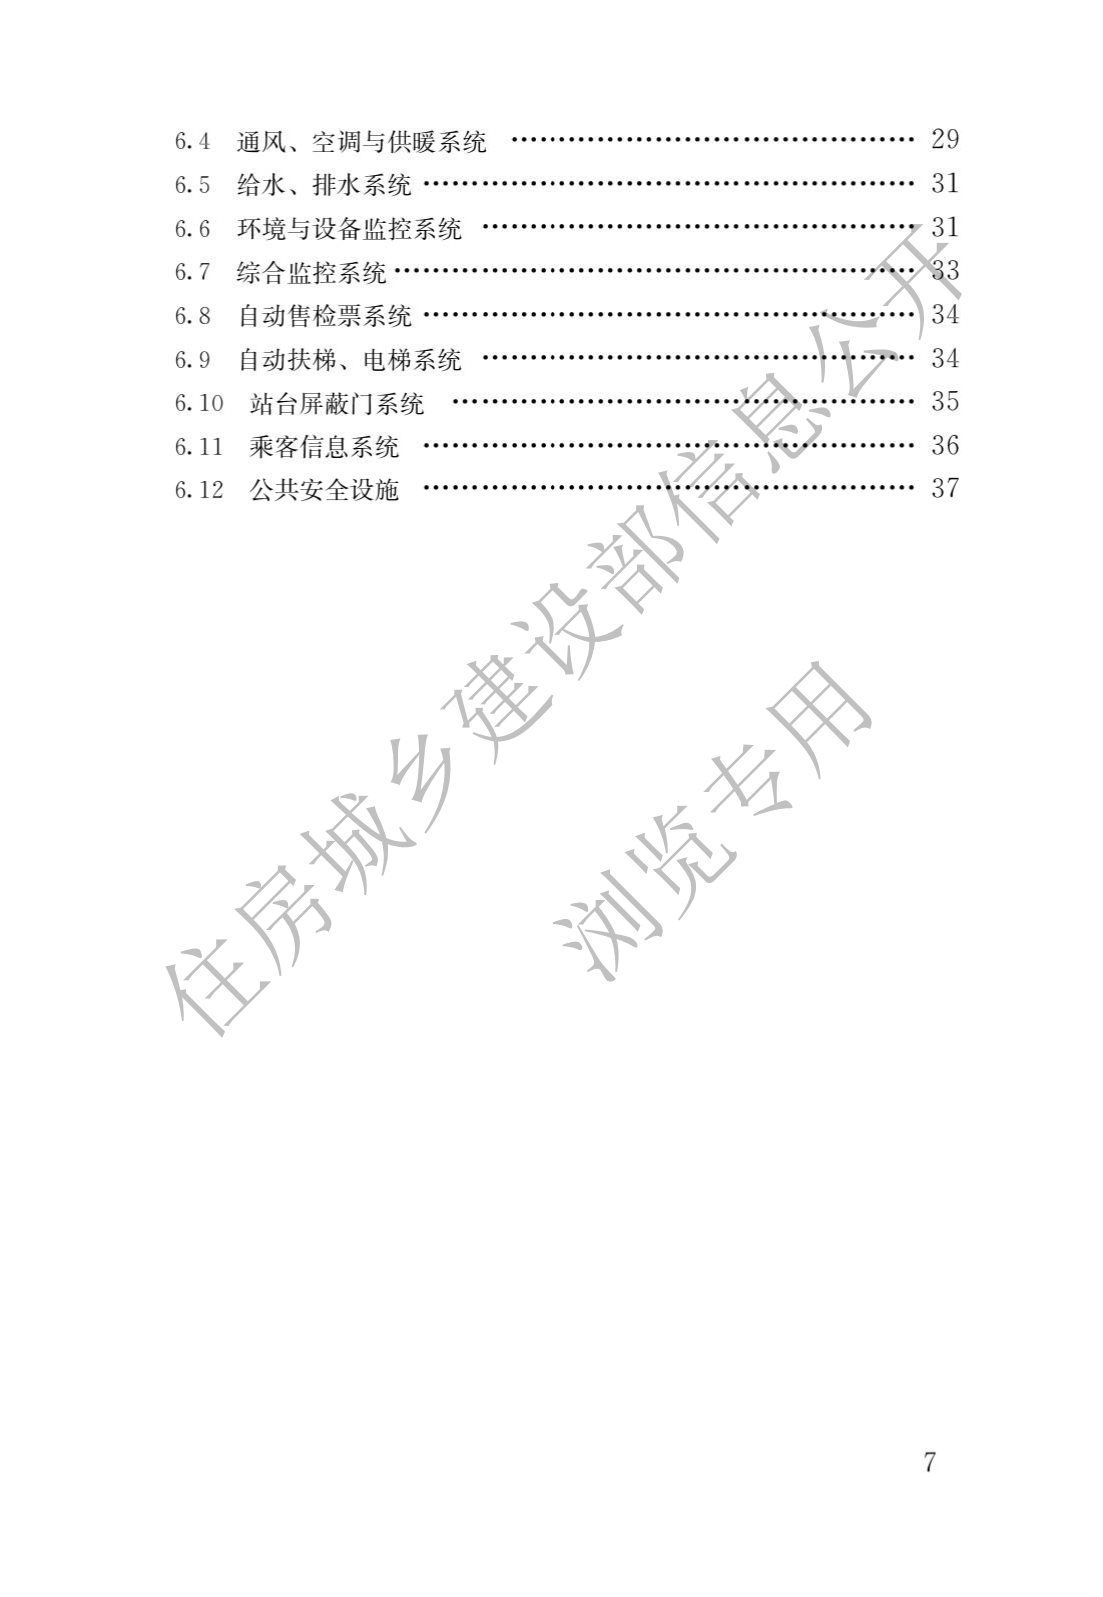 住房和城鄉建設部關于發布國家标準 《城市軌道交通工(gōng)程項目規範》的公告(圖4)